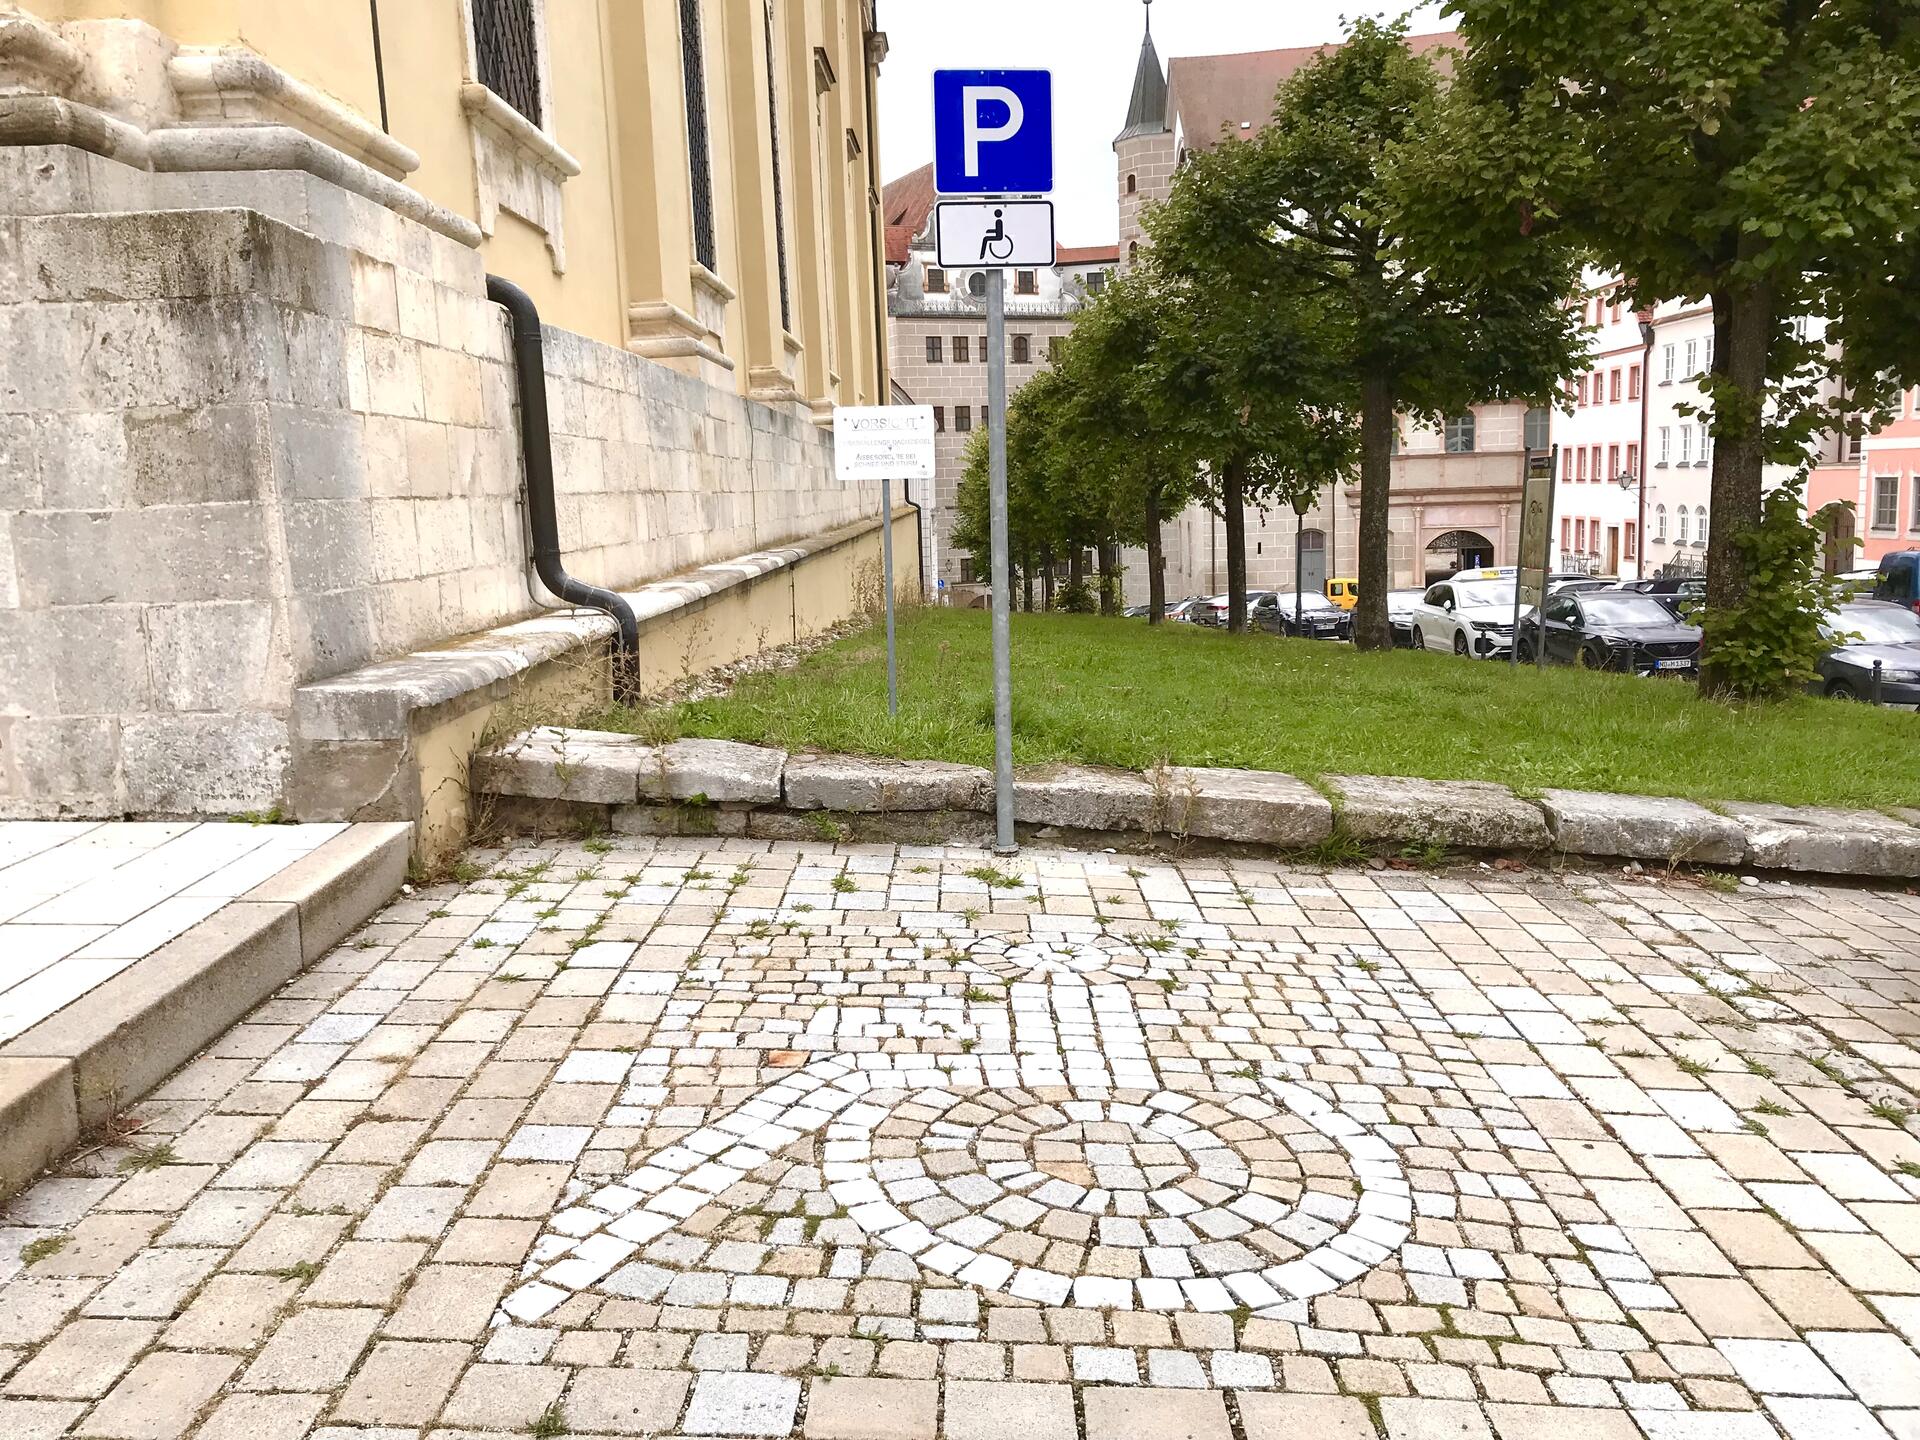 Behindertenparkplatz: Parkerleichterungen für Menschen mit Behinderung